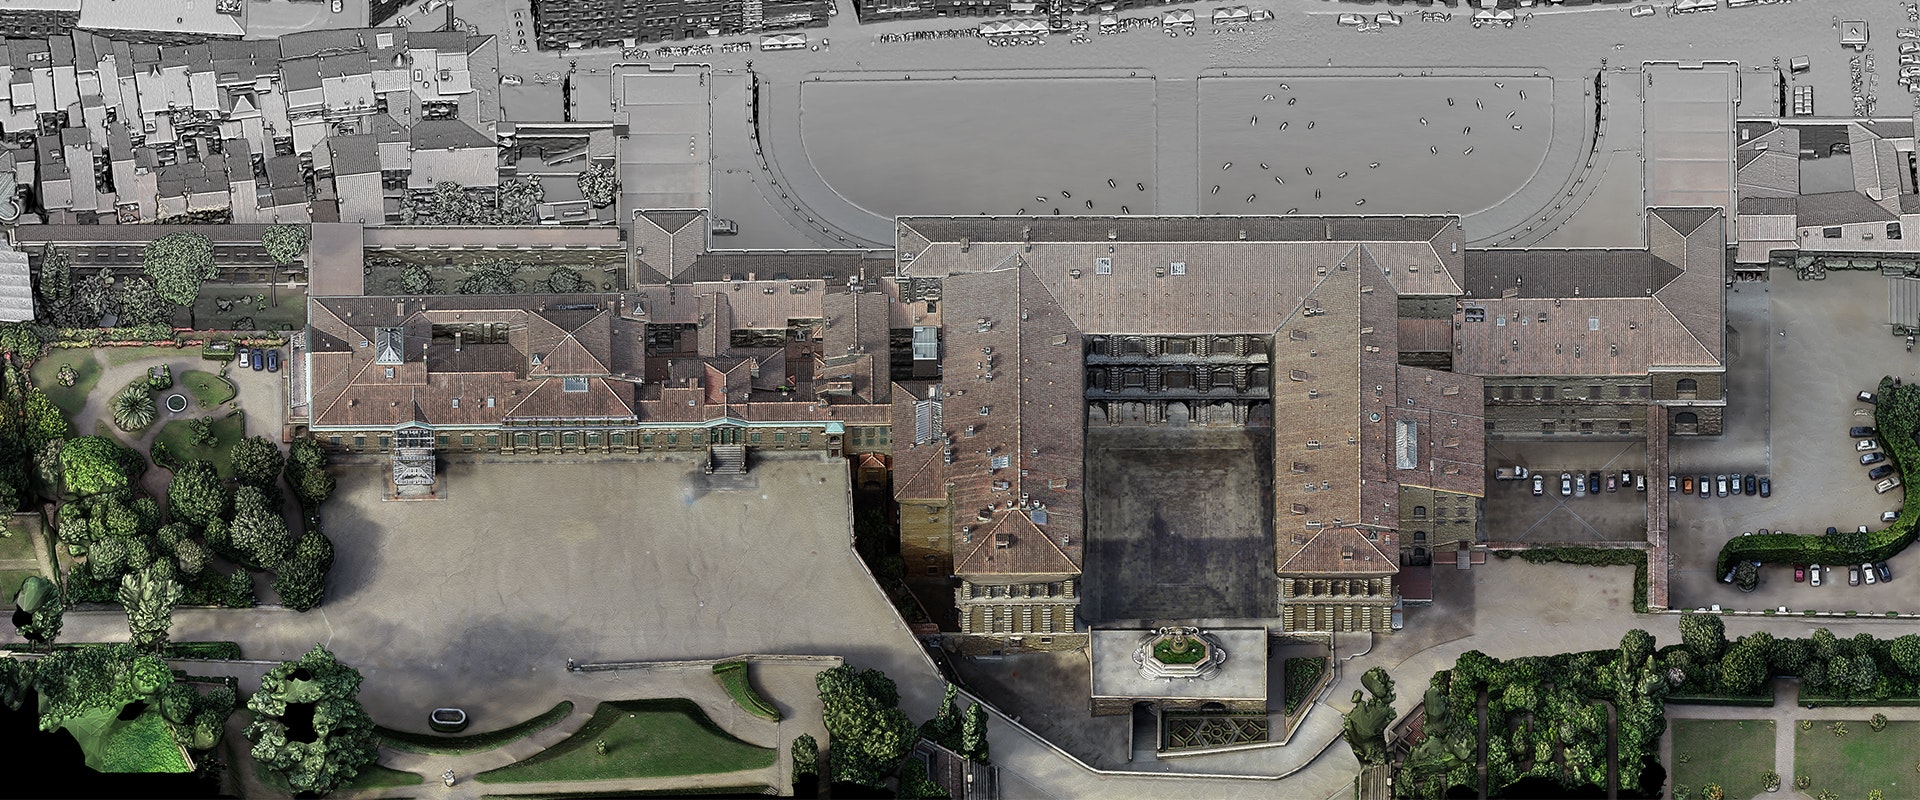 Palazzo Pitti diventa 3D